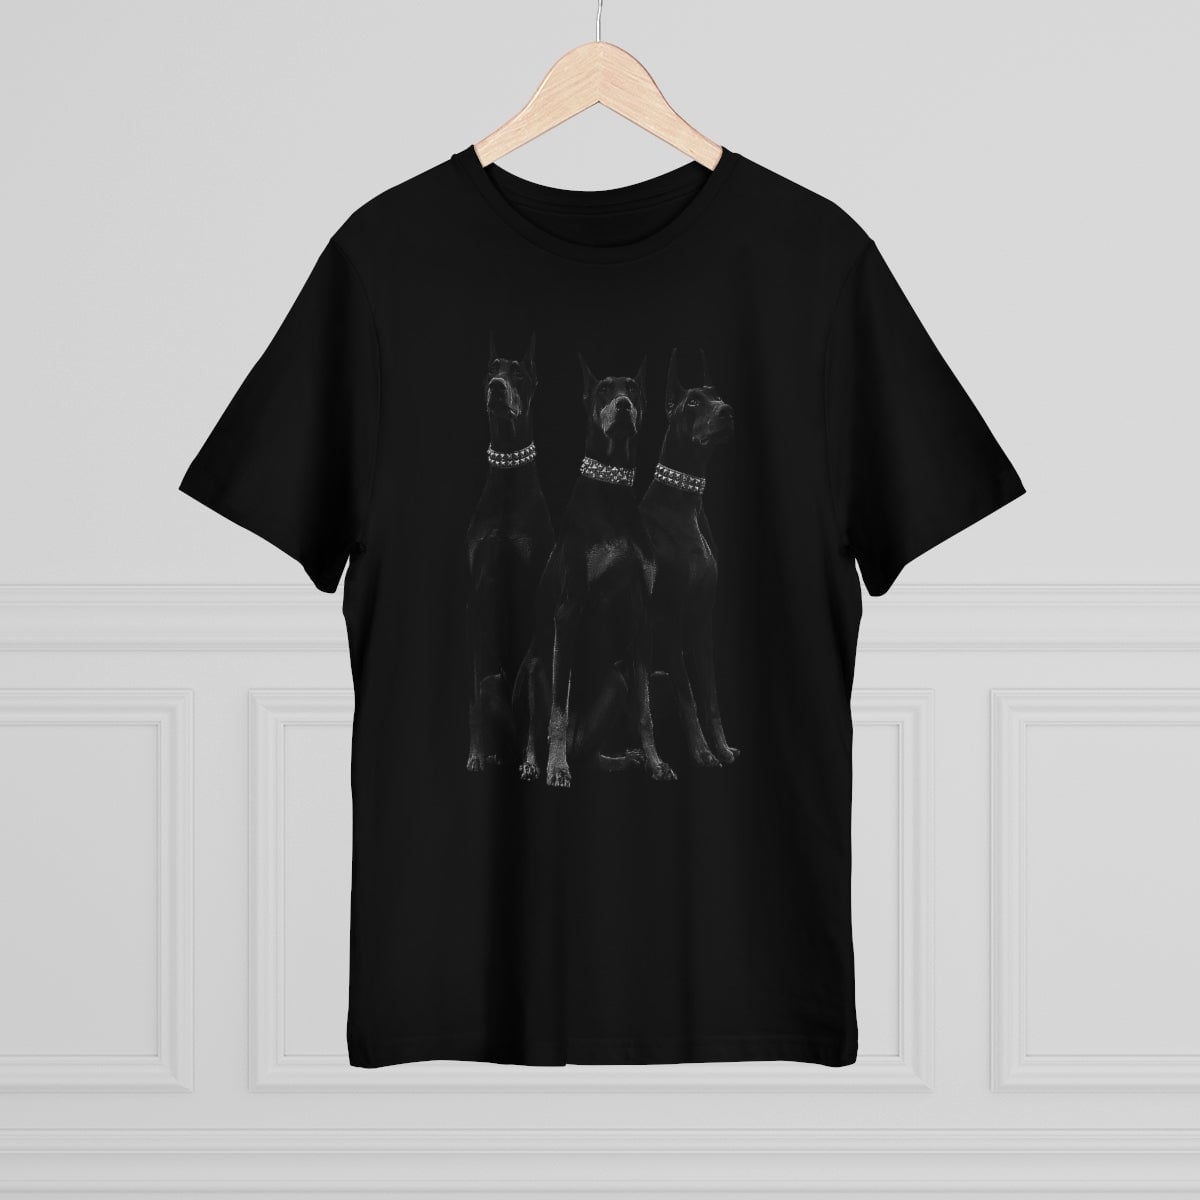 Dobermans Pinscher Gangster Dog Art T-shirt